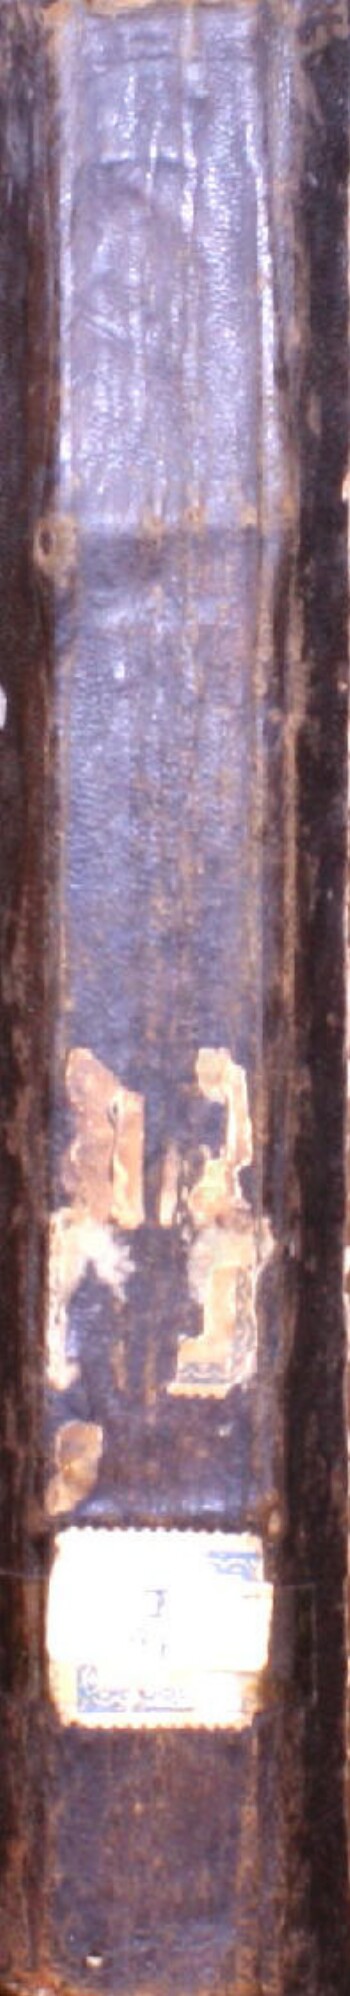 Τογρού τινίγν ταλιμί κι ταρικτέ 1765 Μόσχα Μητροπολουτού φαζιλετλού μαλουματλού Πλάτωνταν τασνίφ ολτού, βε Ορθόδοξος Χριστιαναρίγν τζούμλεσι κεντί λισανναρηνά τερτζουμά εττιρτιλέριτι, βε φάκατ τούρκτζα πιλέν Χριστιαννάρ μαχρούμιτλερ που Αζίζ Κιταπτάν σιμτιγέκαταρ